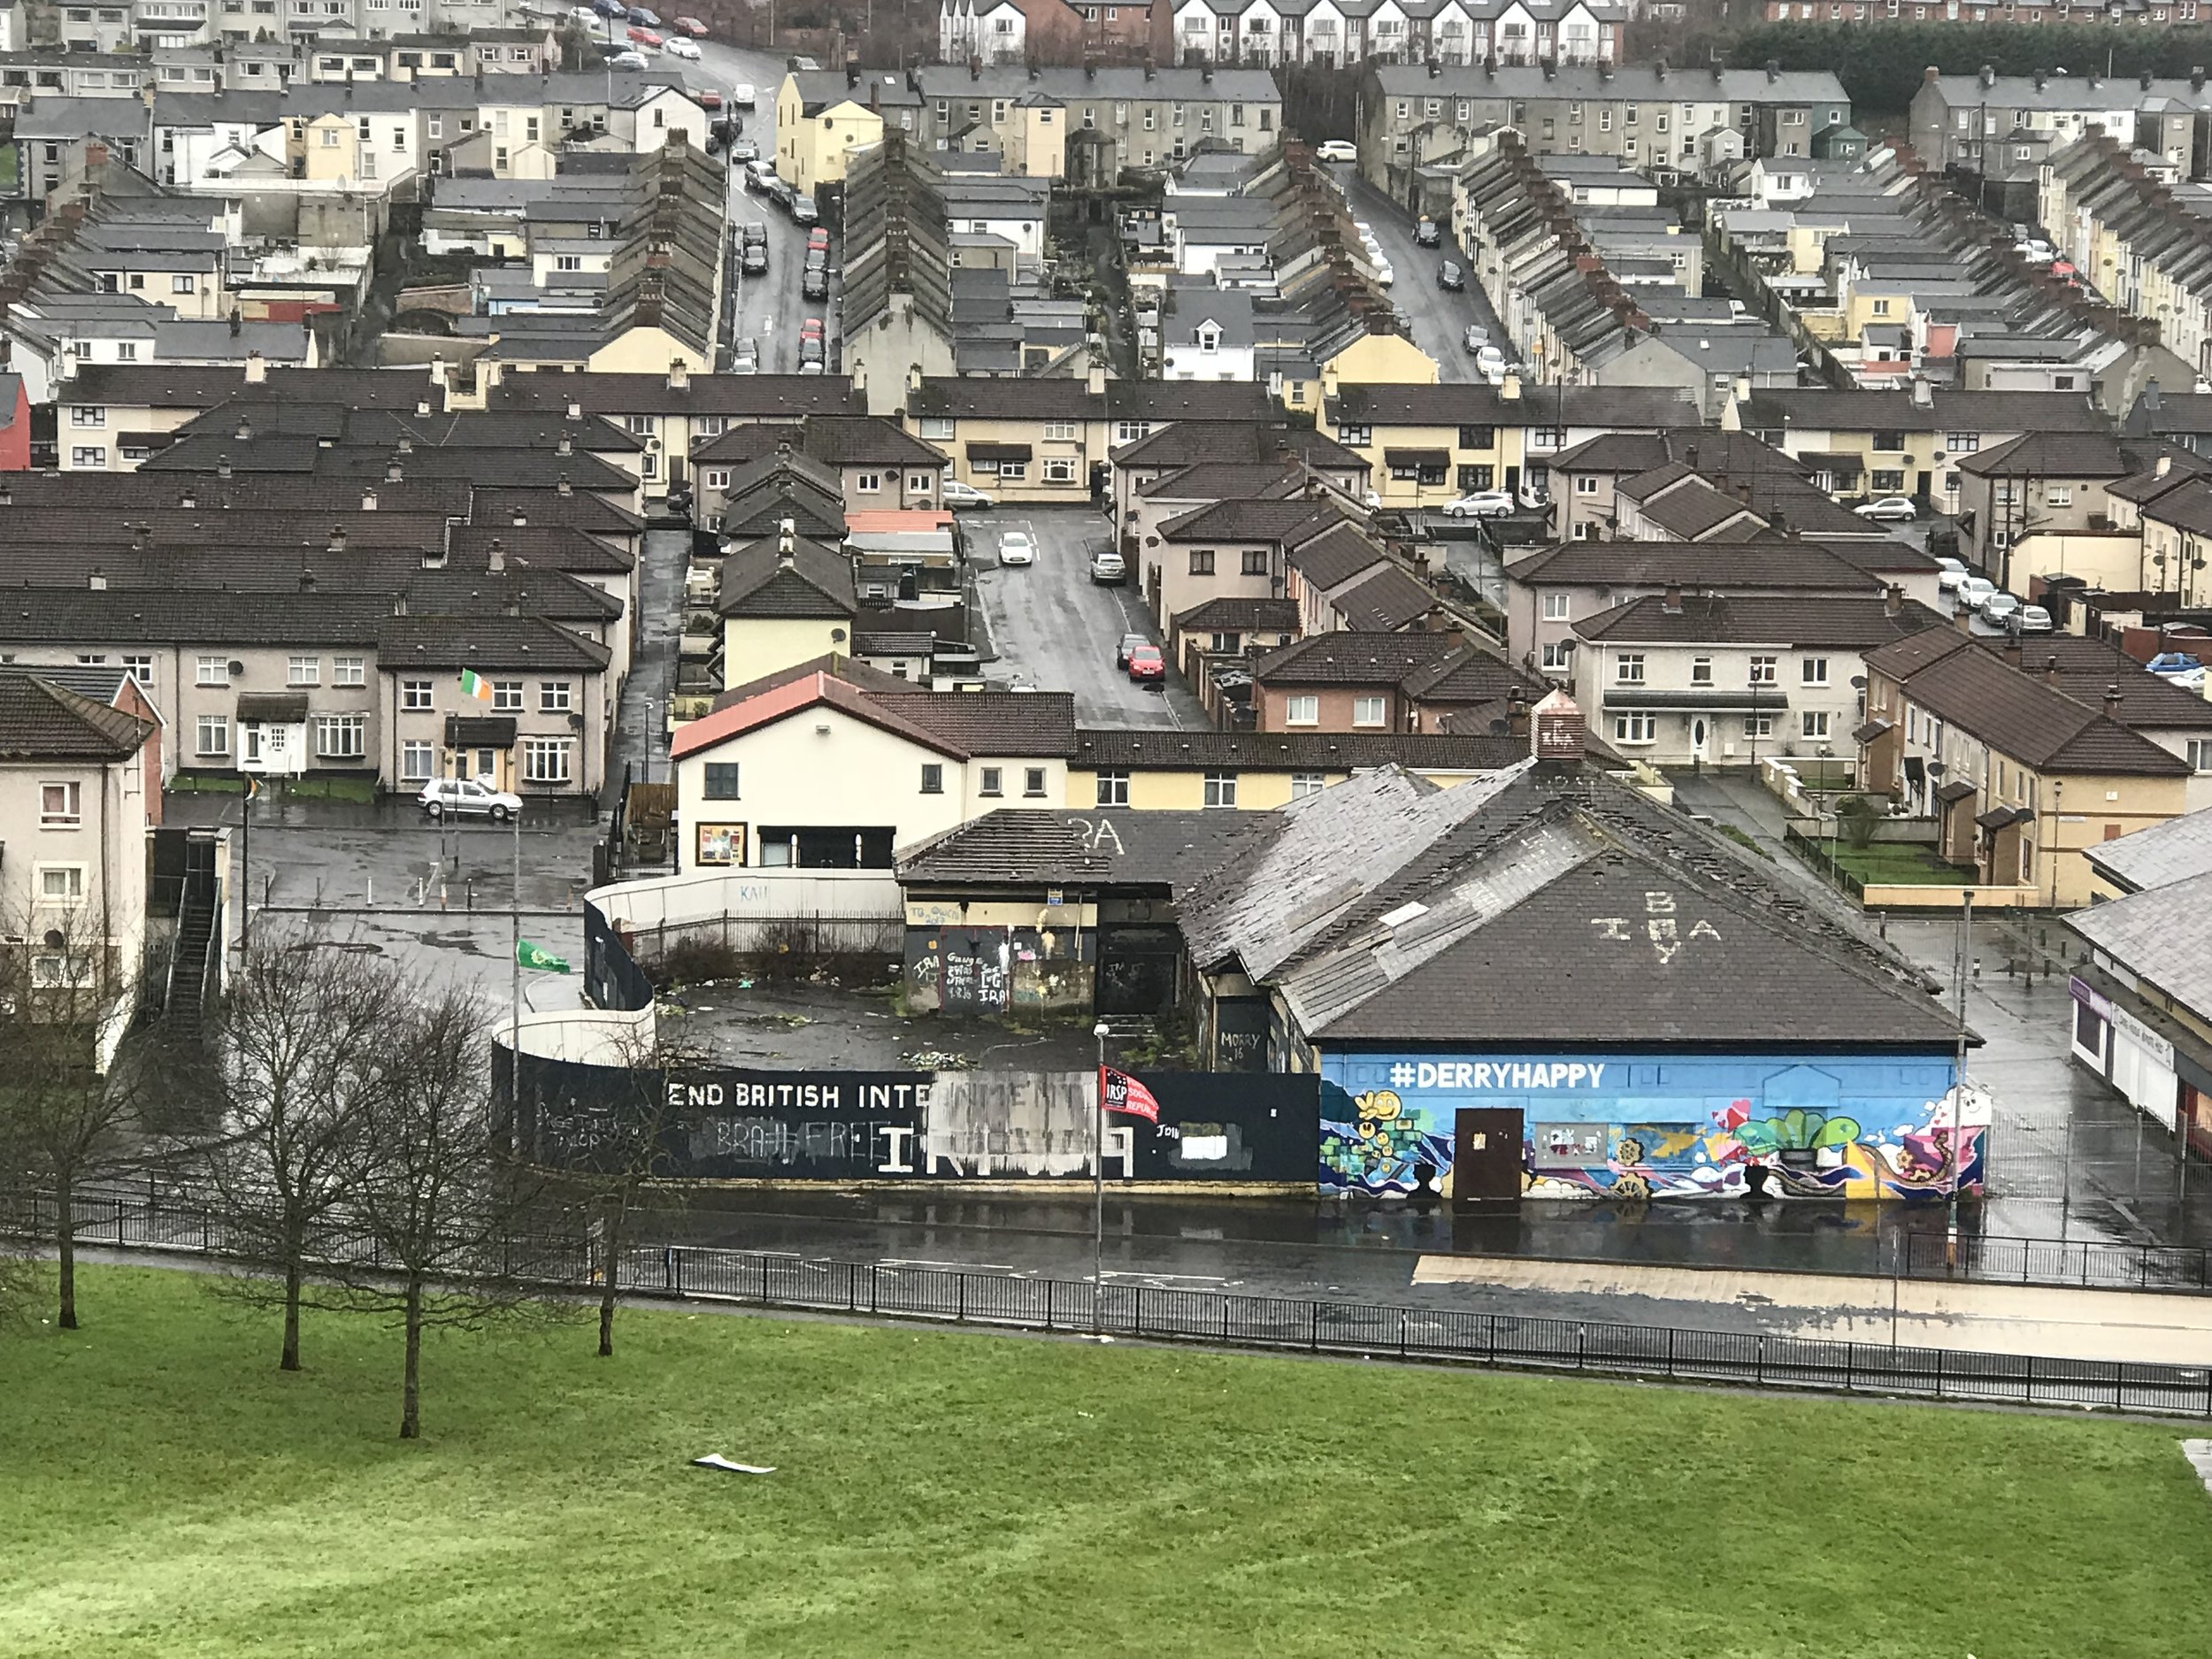 Town of Derry, N Ireland